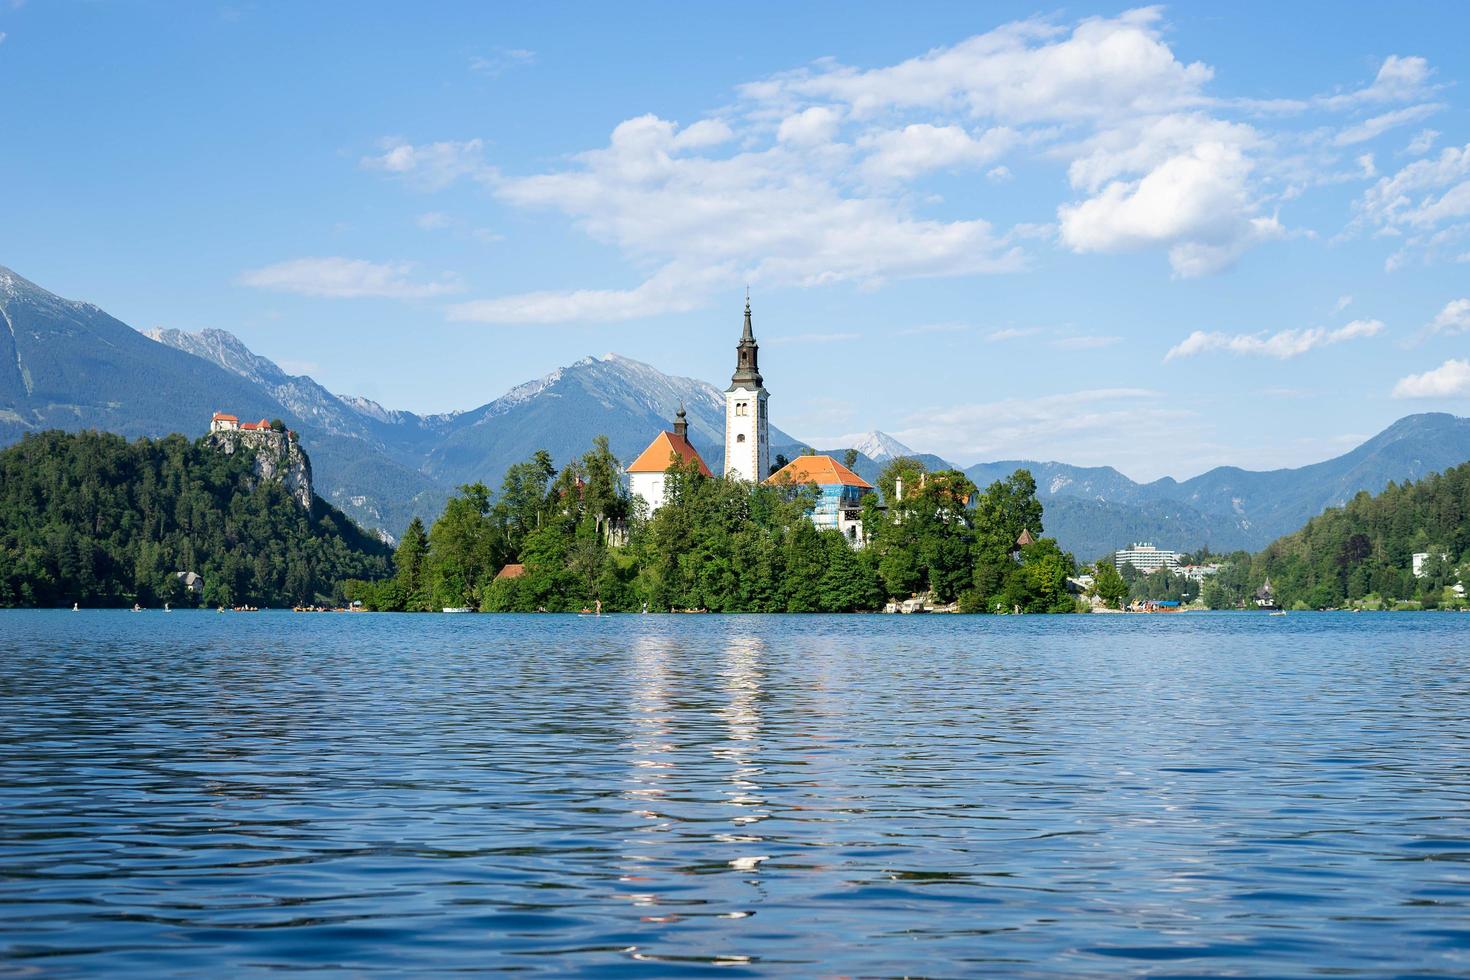 lake bled, slovenia, 2020 - igreja em uma ilha no lago bled foto